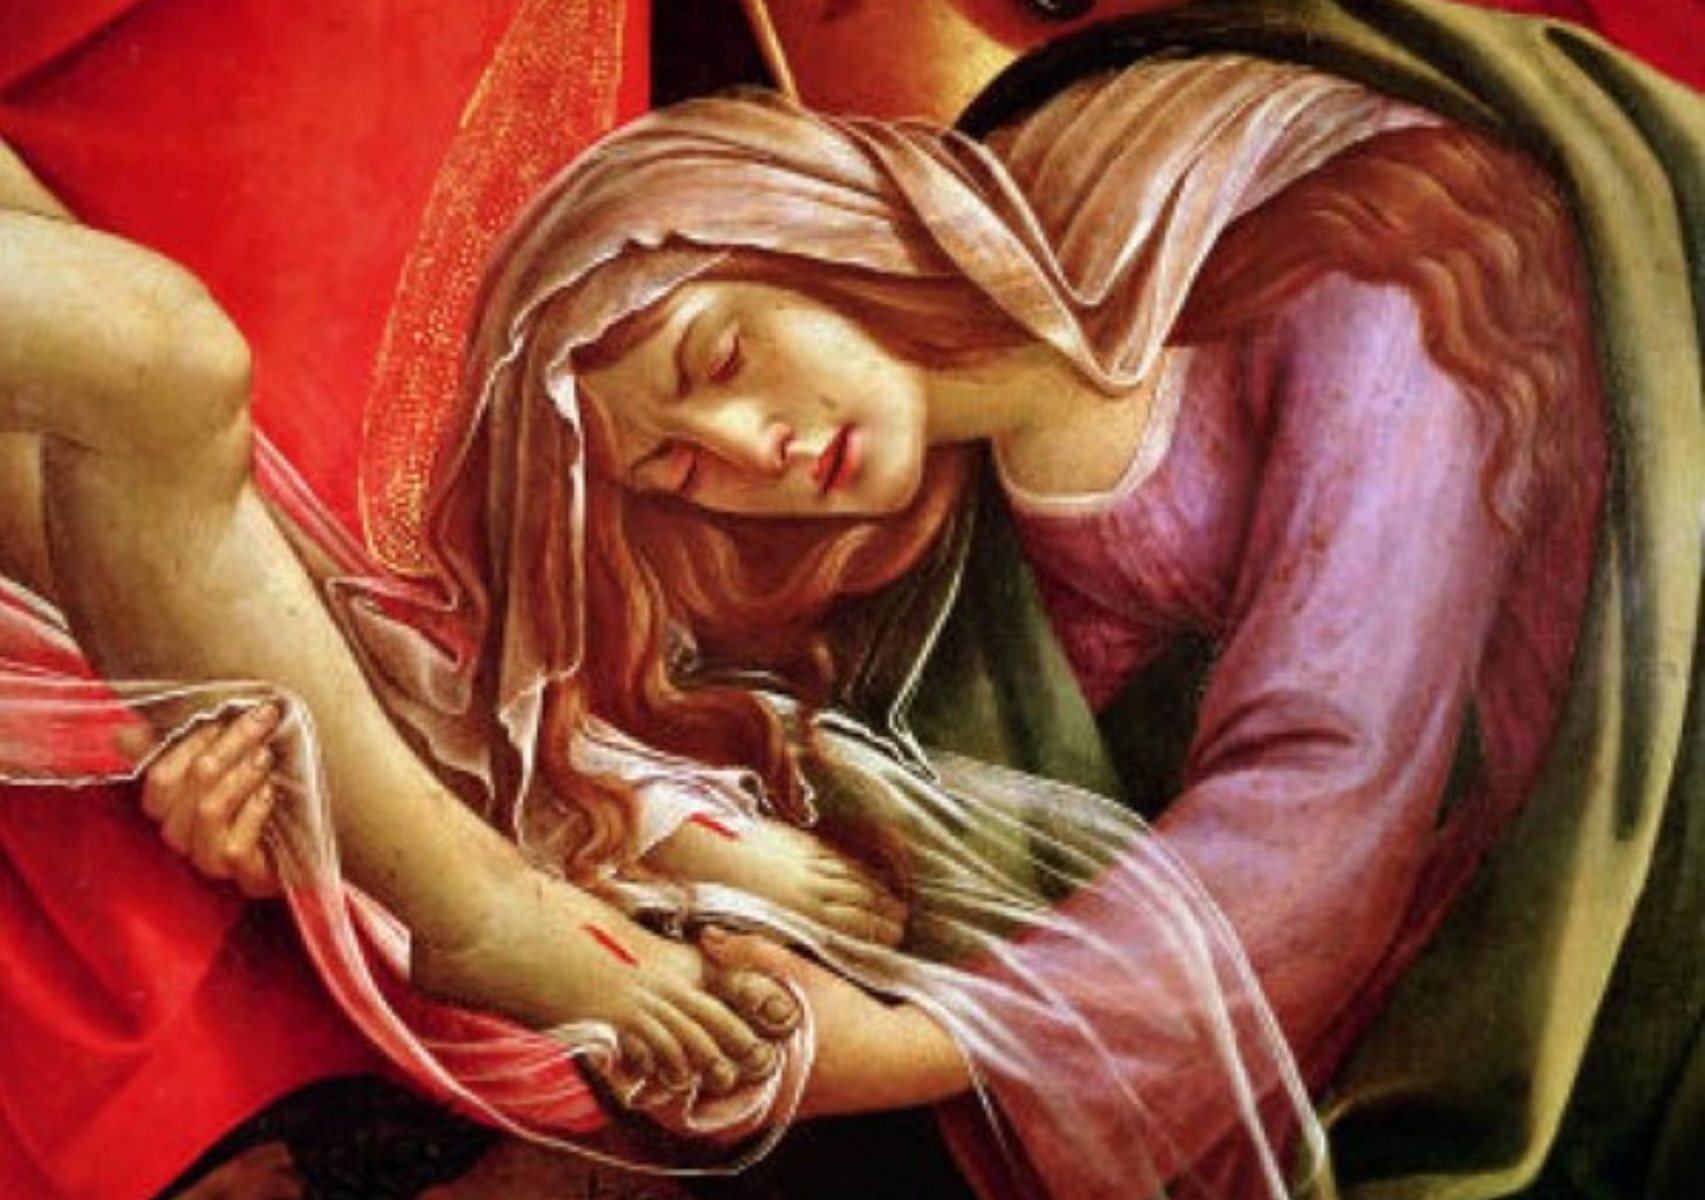 Η Παναγία η Μαρία Μαγδαληνή και η ιστορία πίσω από το έθιμο των κόκκινων αυγών